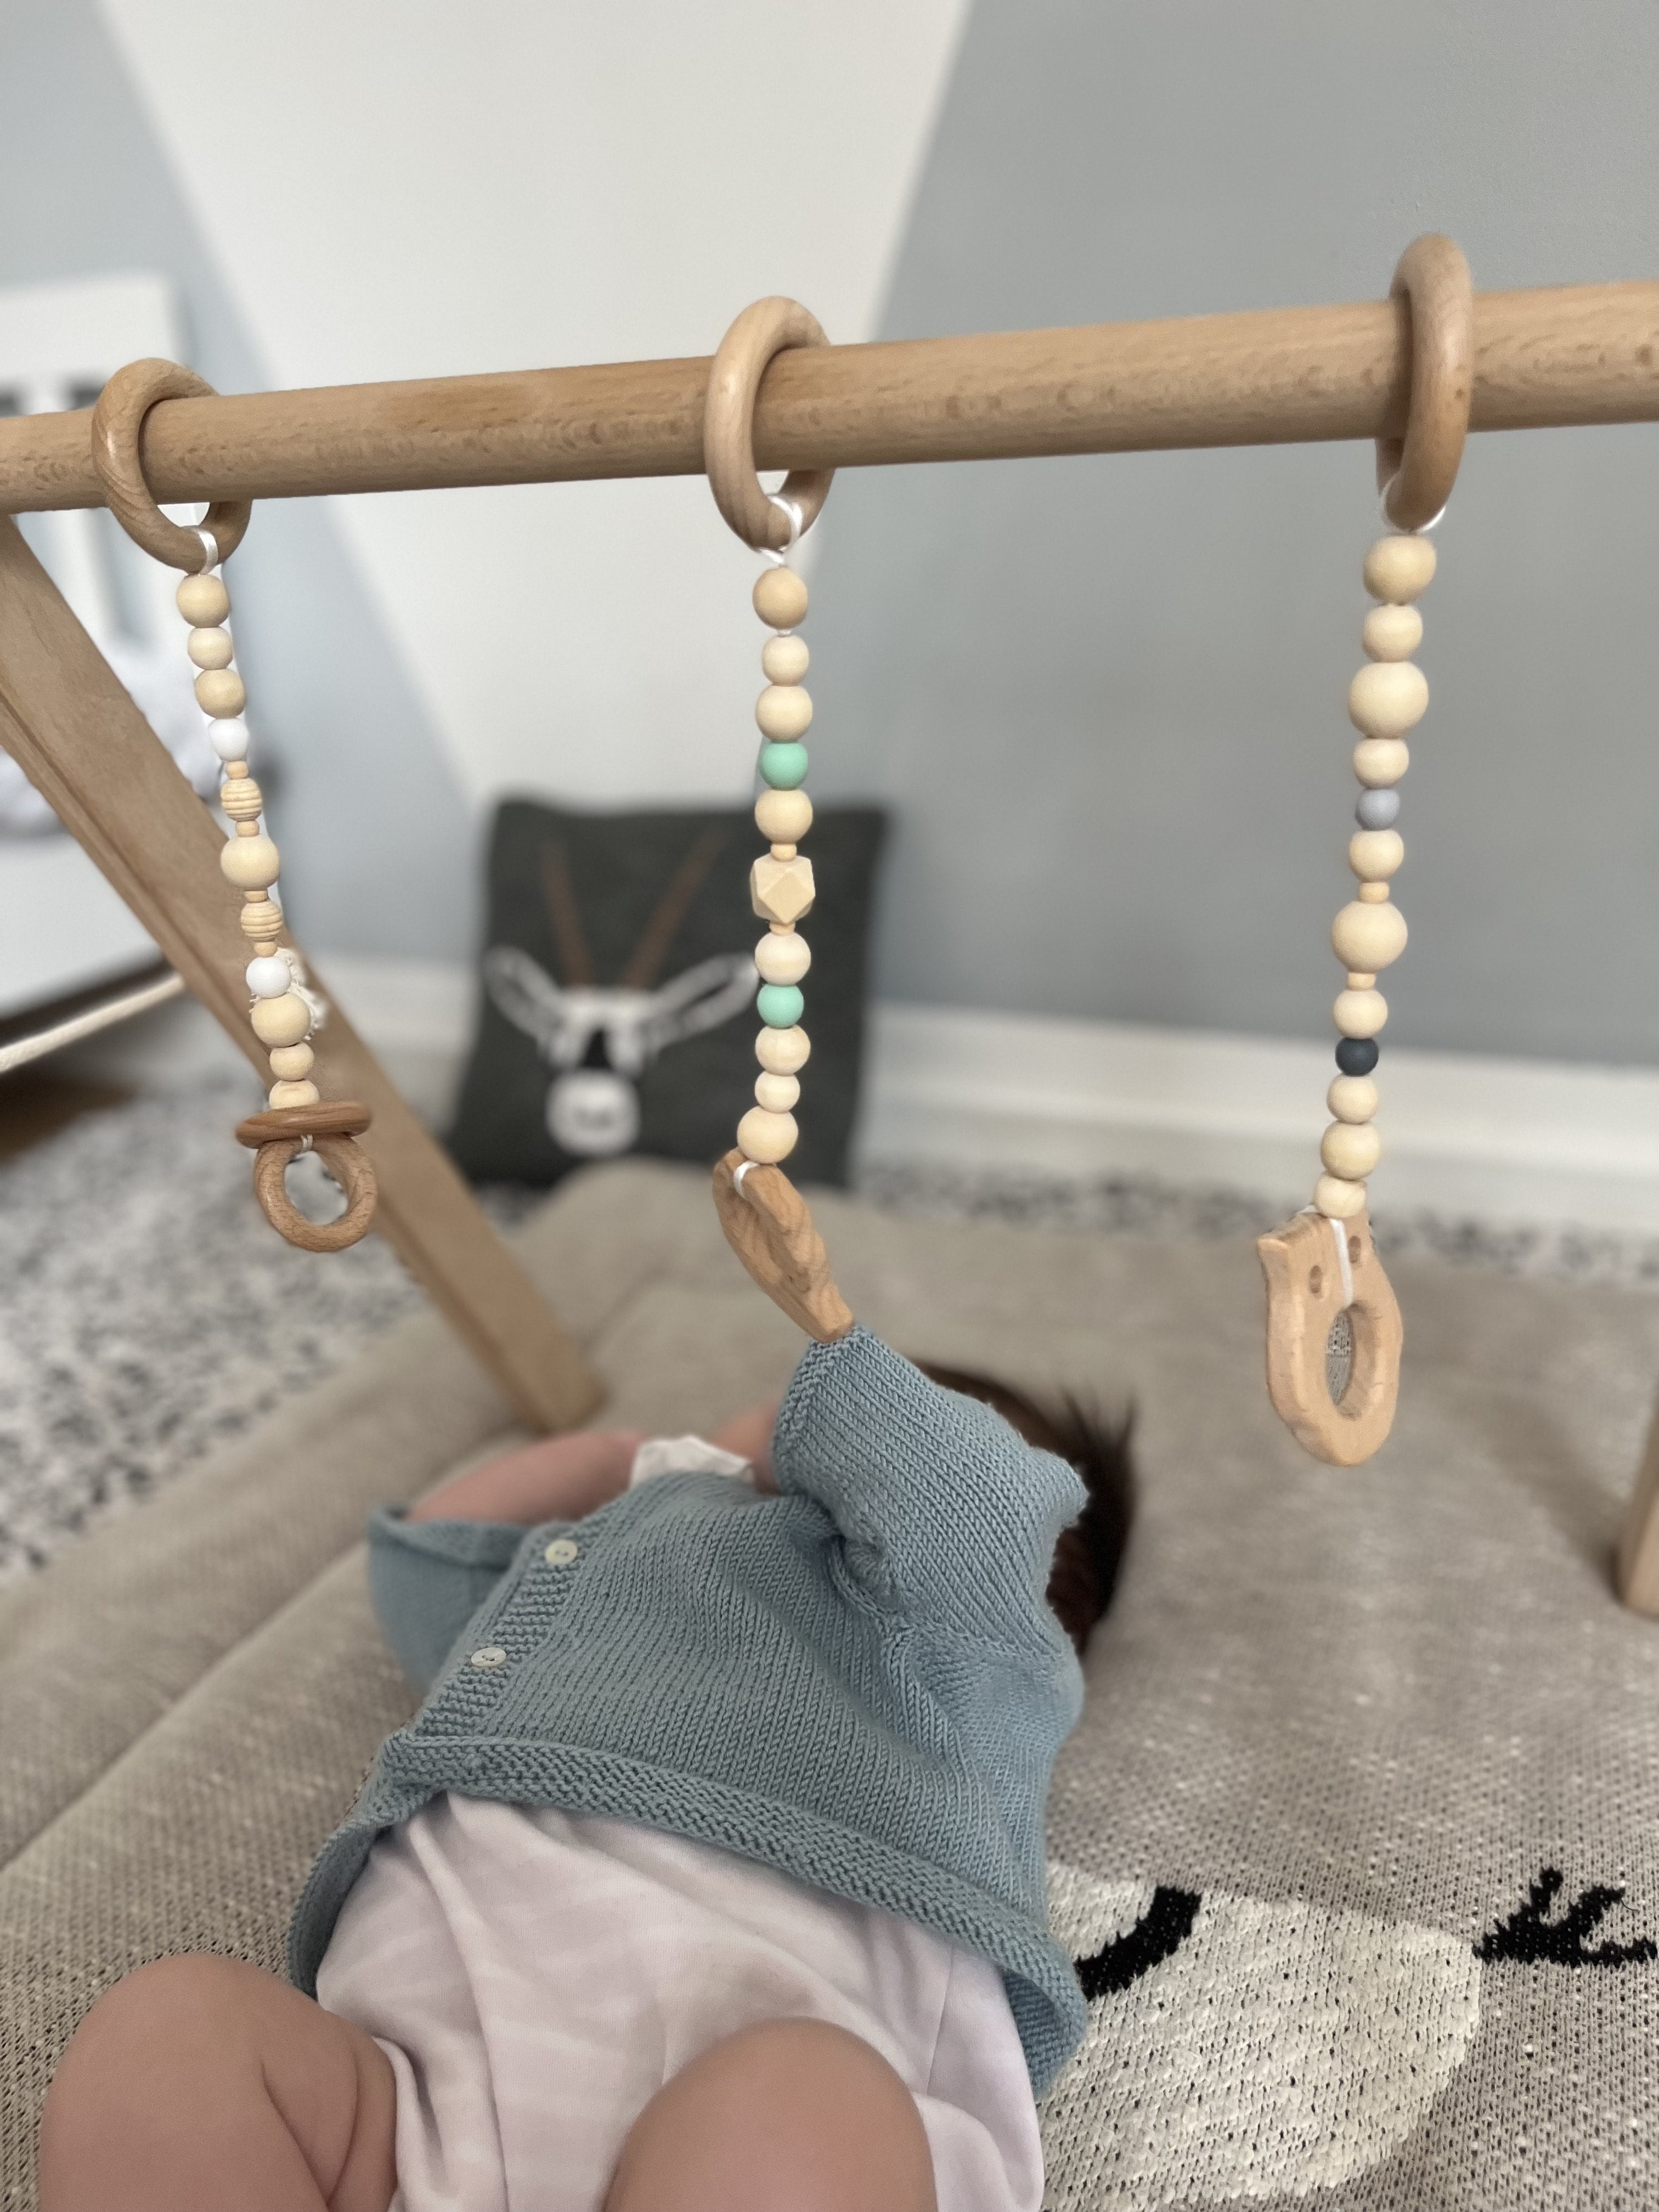 Arche d'éveil en bois - L'univers de mon bébé